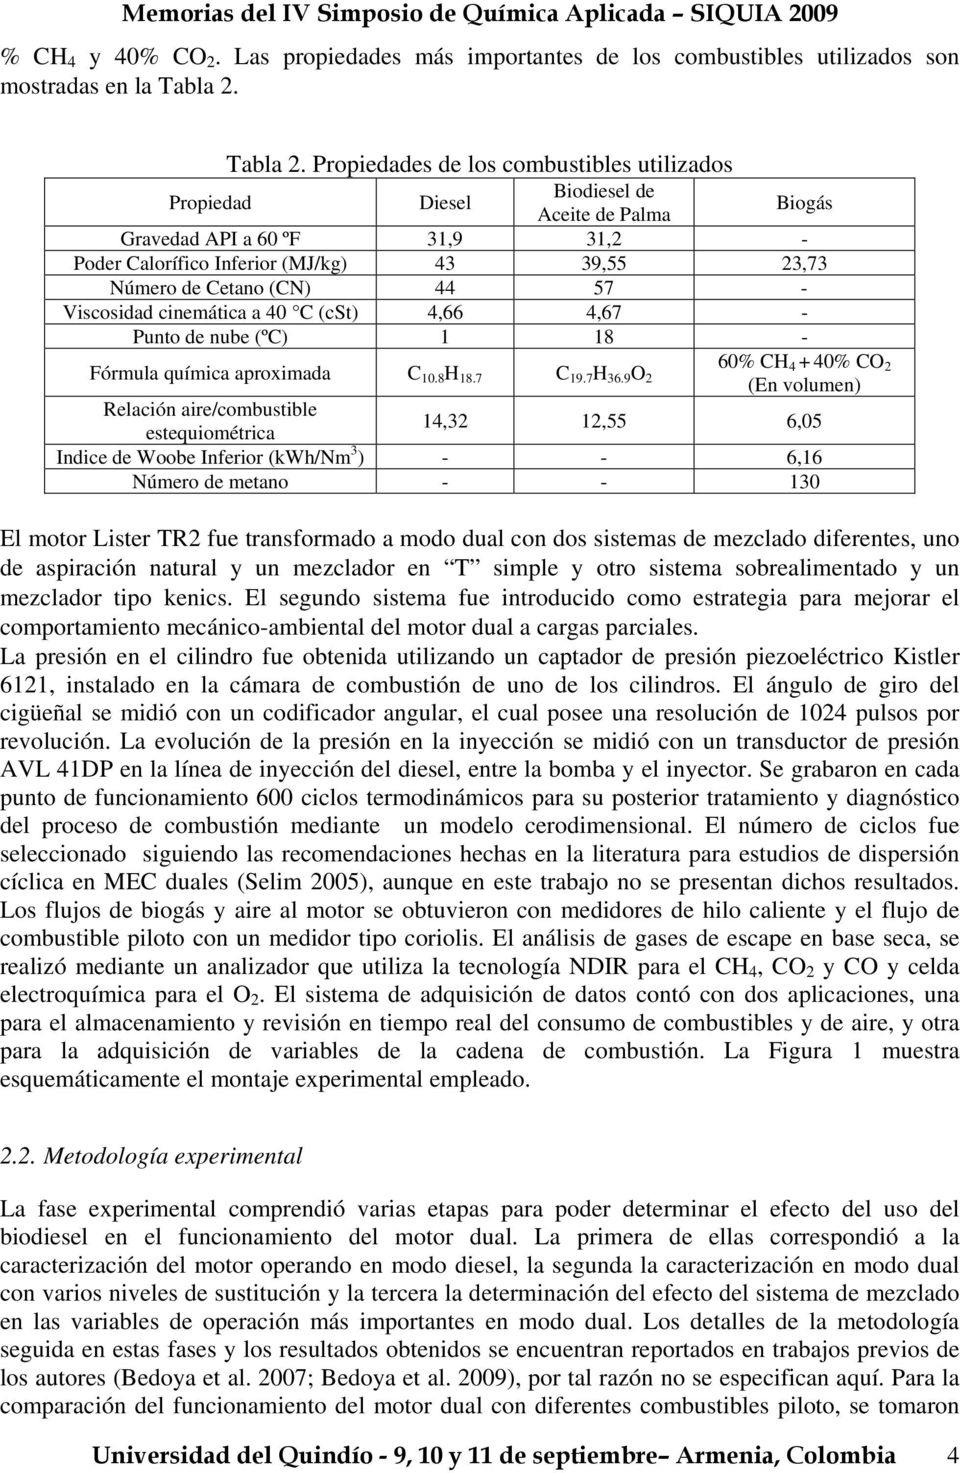 Propiedades de los combustibles utilizados Propiedad Diesel Biodiesel de Aceite de Palma Biogás Gravedad API a 60 ºF 31,9 31,2 - Poder Calorífico Inferior (MJ/kg) 43 39,55 23,73 Número de Cetano (CN)